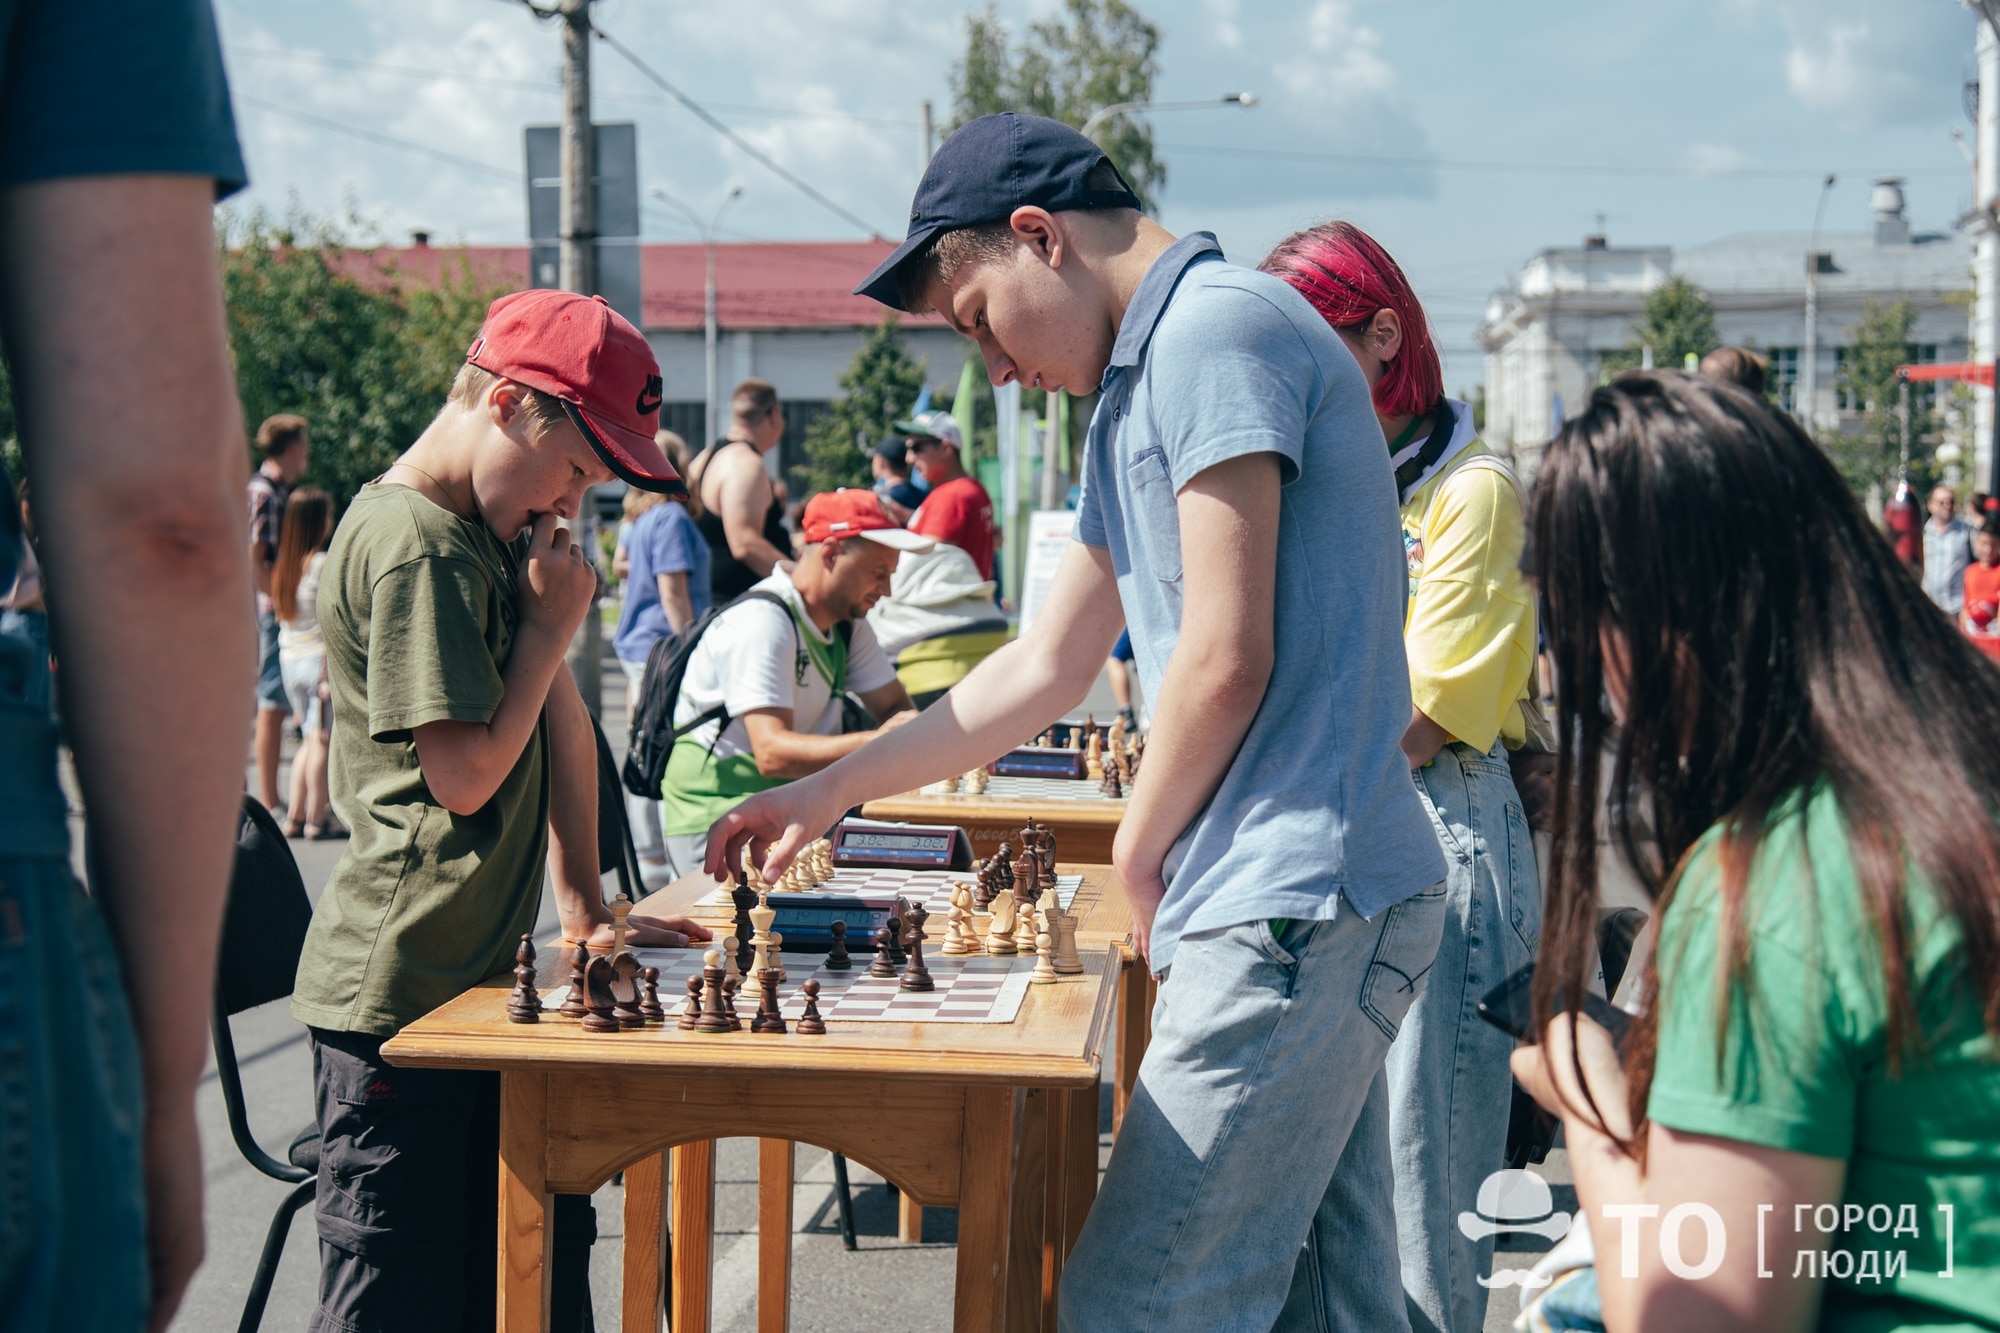 Томские новости, Улица Усова в Томске превратилась в шахматный уголок